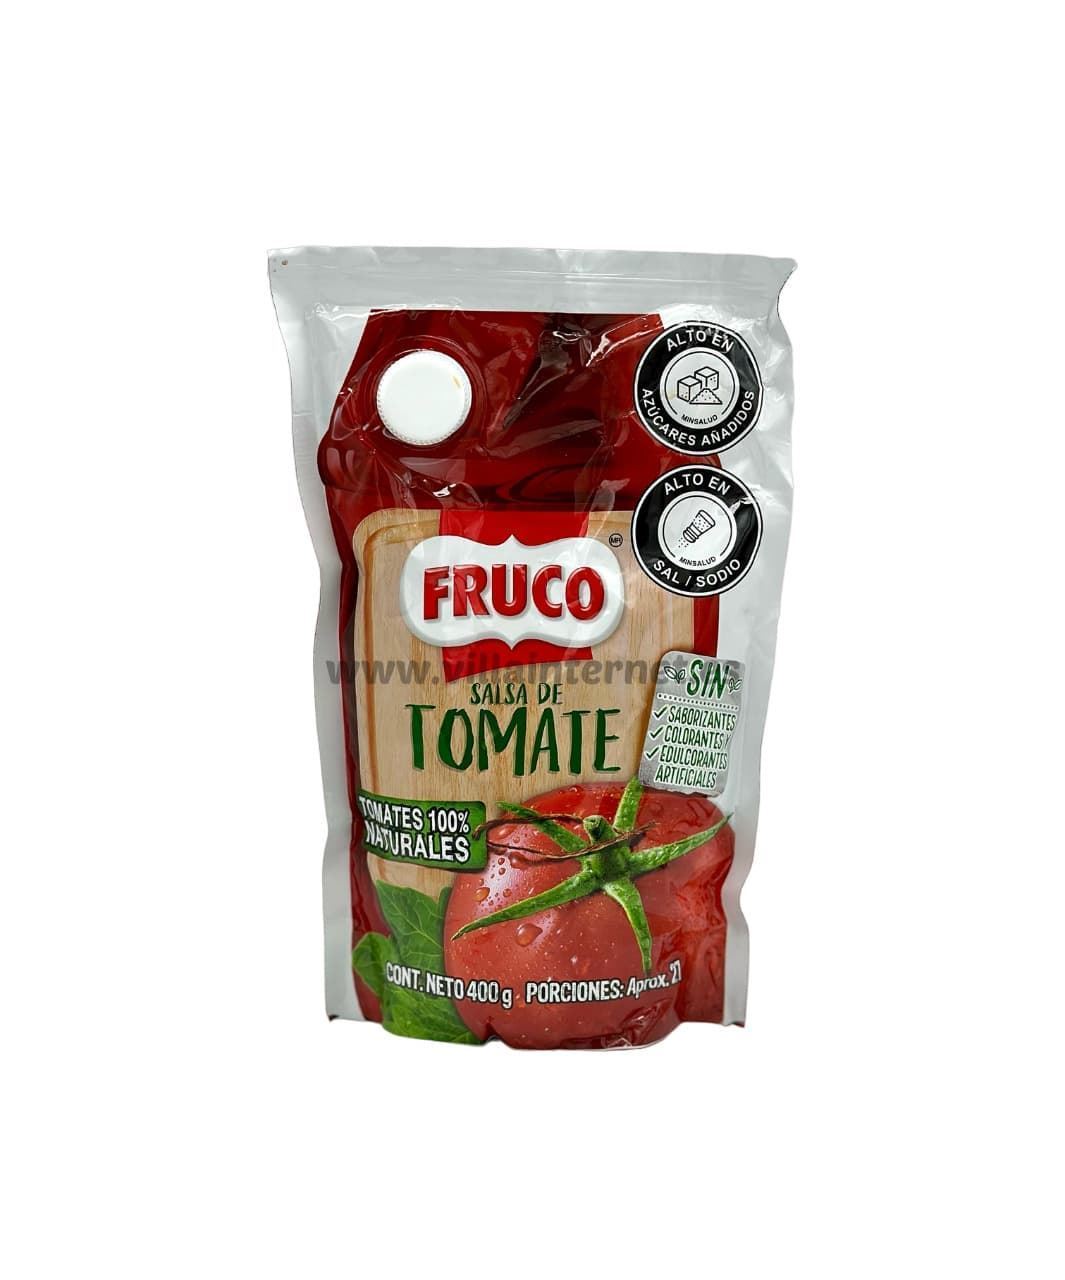 Salsa de tomate Kétchup Fruco 400g - Imagen 1